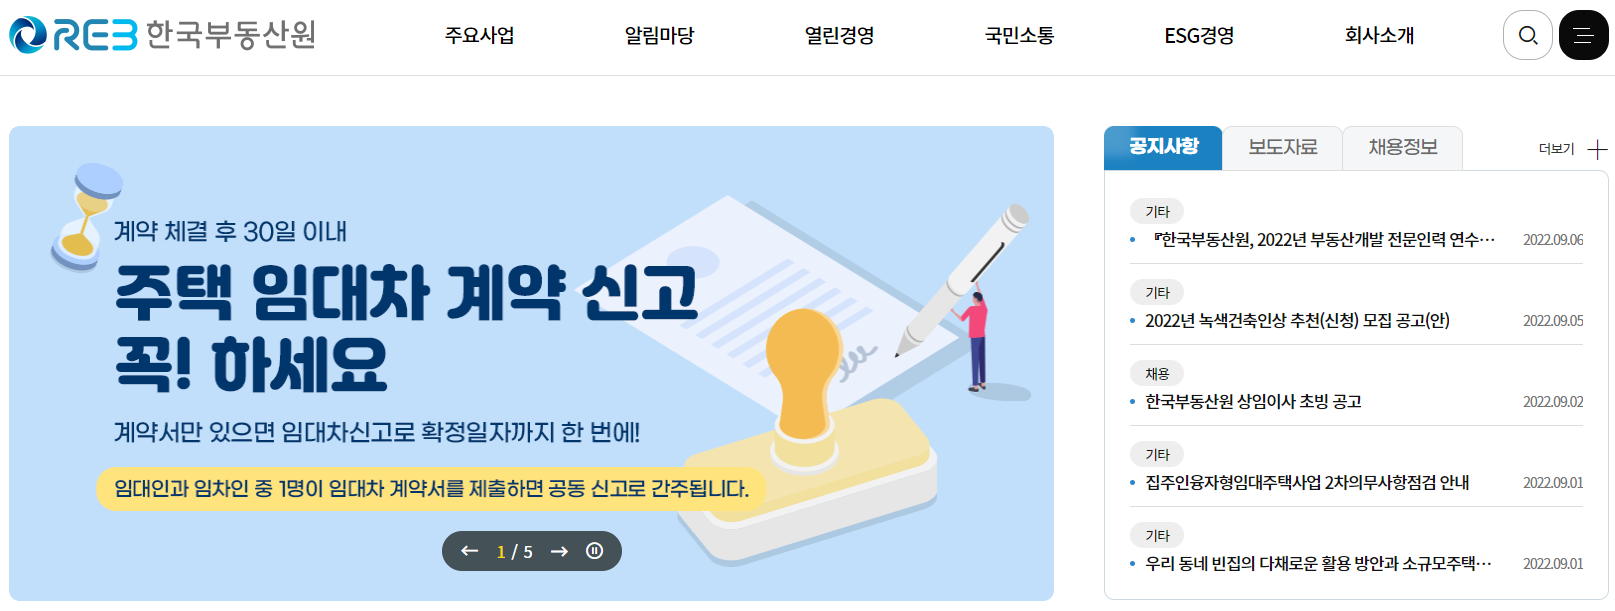 한국부동산원 홈페이지 메인화면